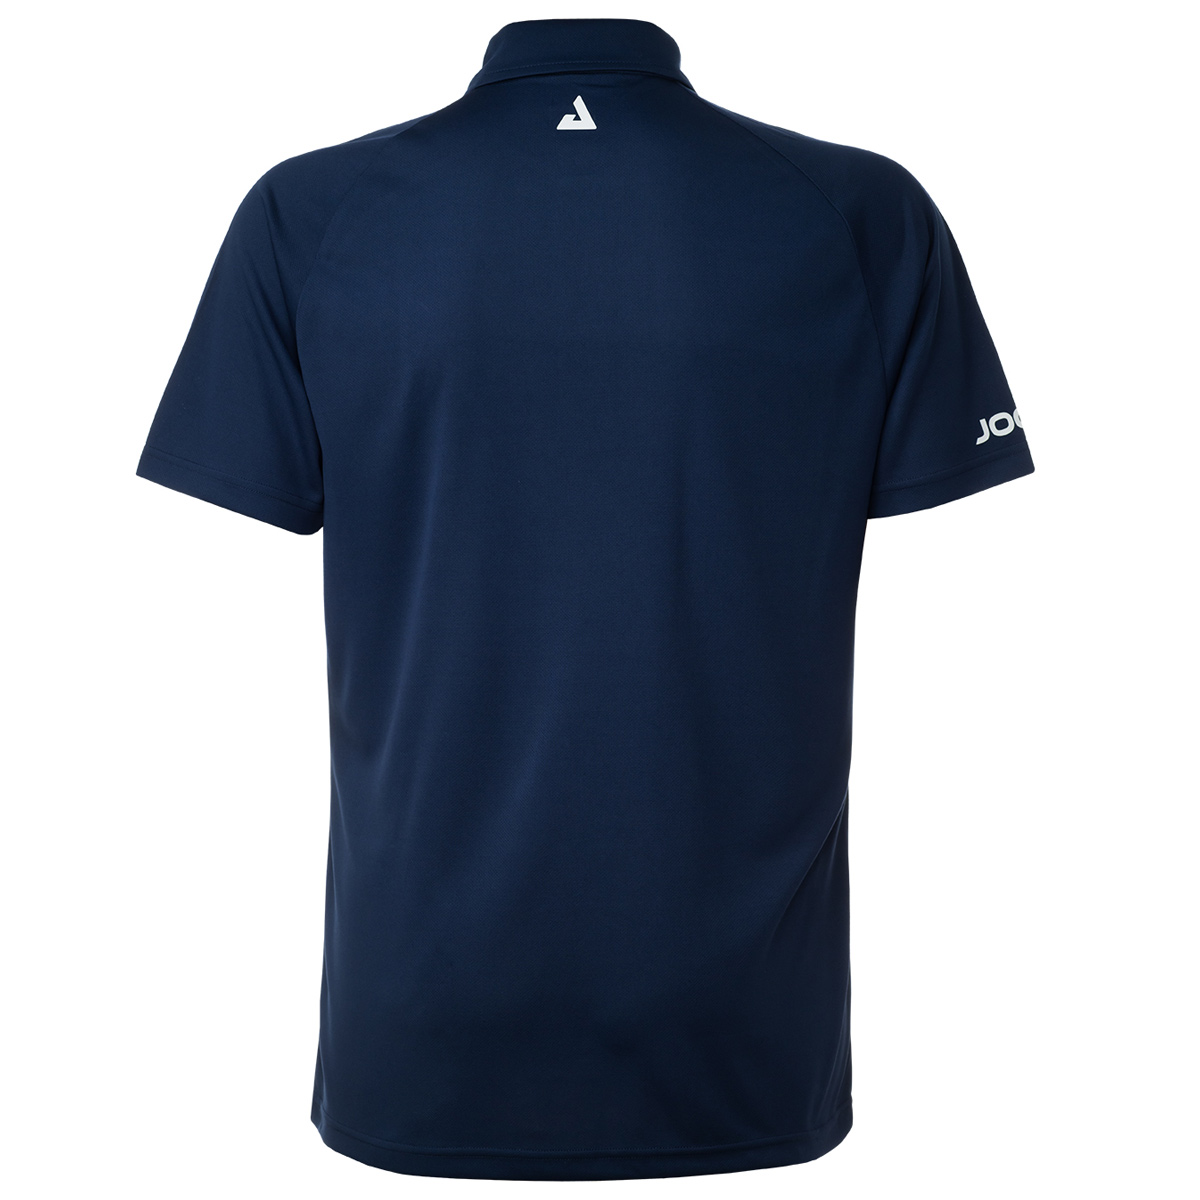 JOOLA Shirt Plexus navy/blue S